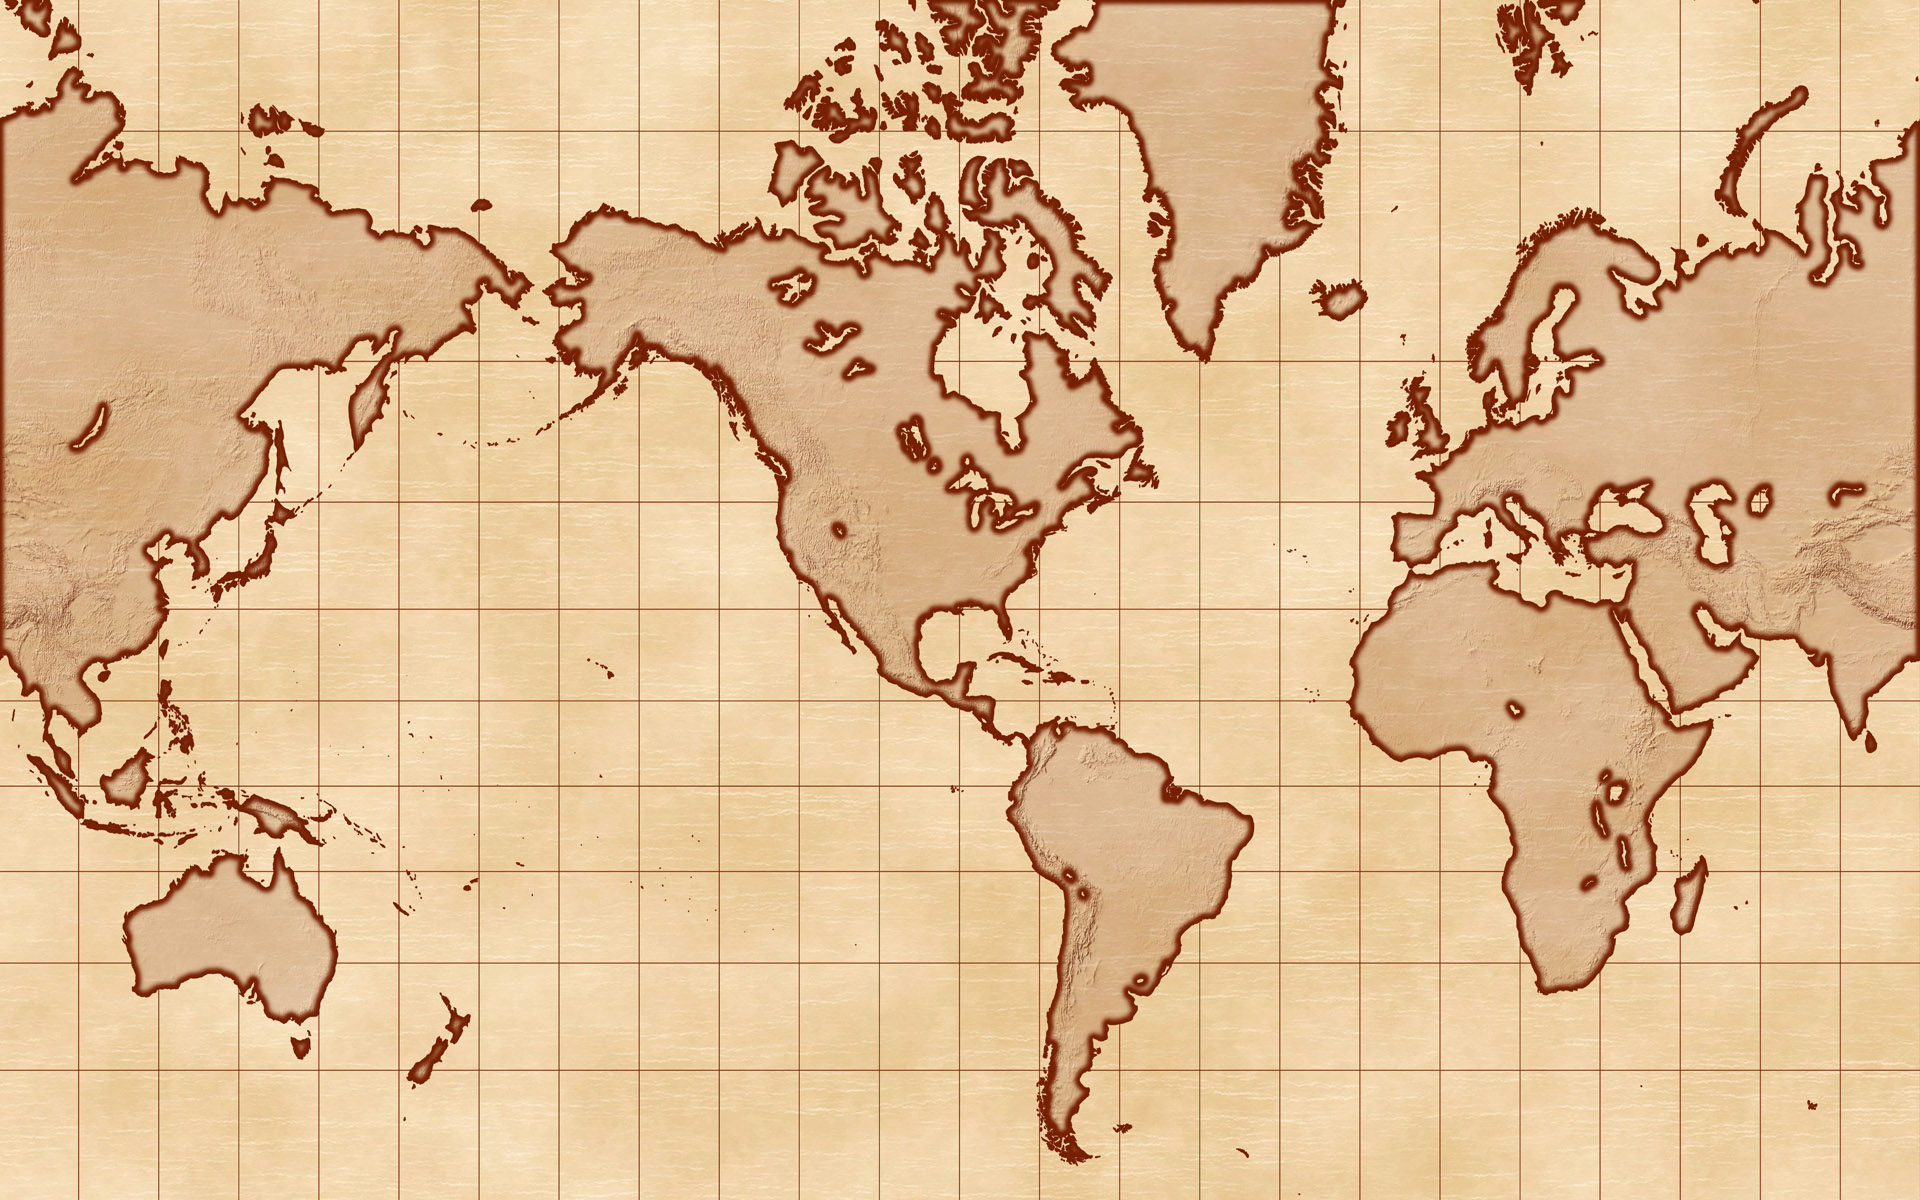 壁纸1920x1200地图 我们的地球壁纸壁纸 地图！我们的地球壁纸壁纸 地图！我们的地球壁纸图片 地图！我们的地球壁纸素材 创意壁纸 创意图库 创意图片素材桌面壁纸